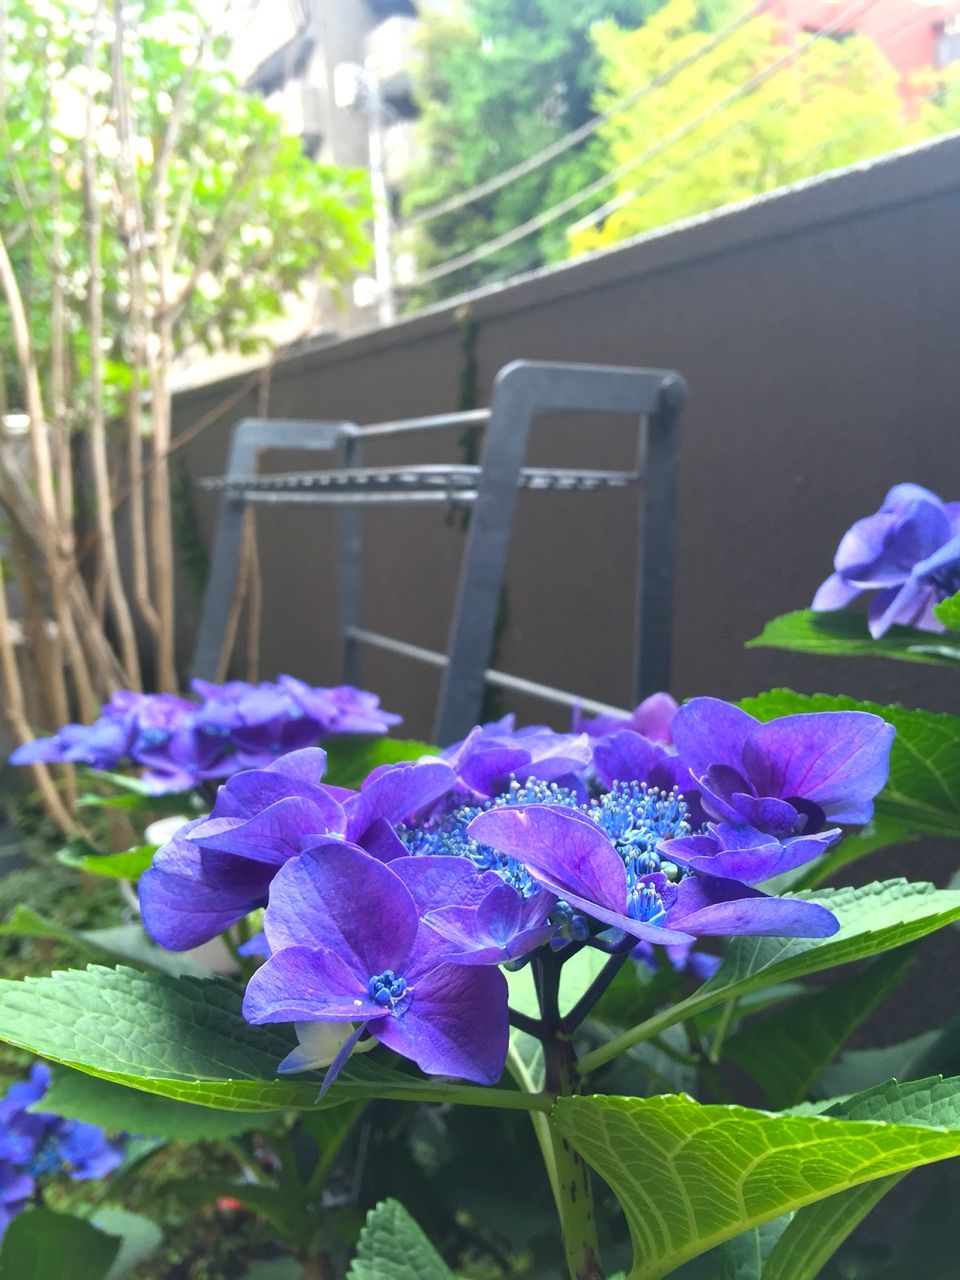 久しぶりに庭の紫陽花が咲いた コイケのブログ